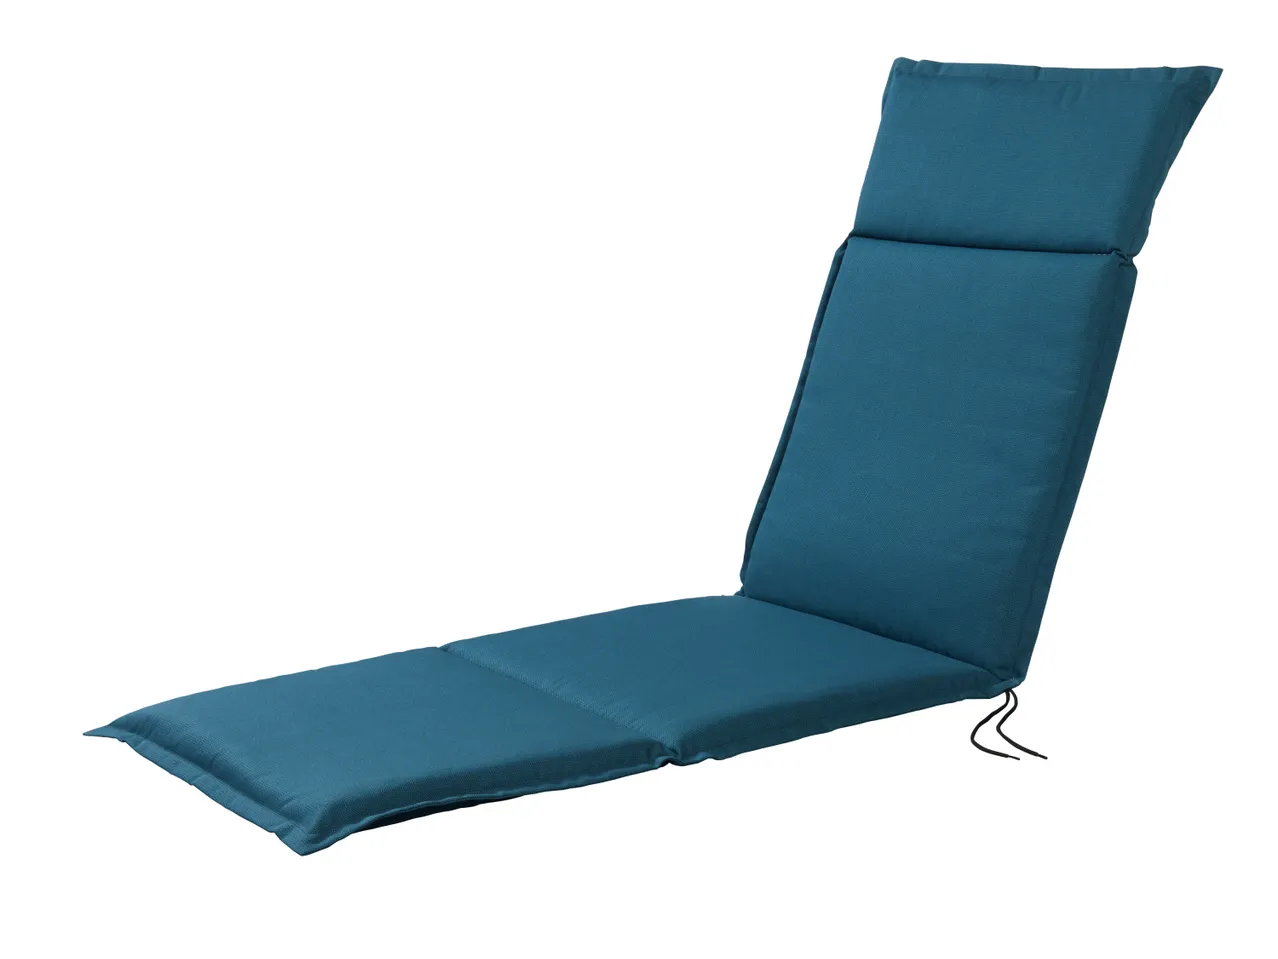 Cuscino per sedia sdraio , prezzo 14.99 EUR 
Cuscino per sedia sdraio 167x50 cm ...